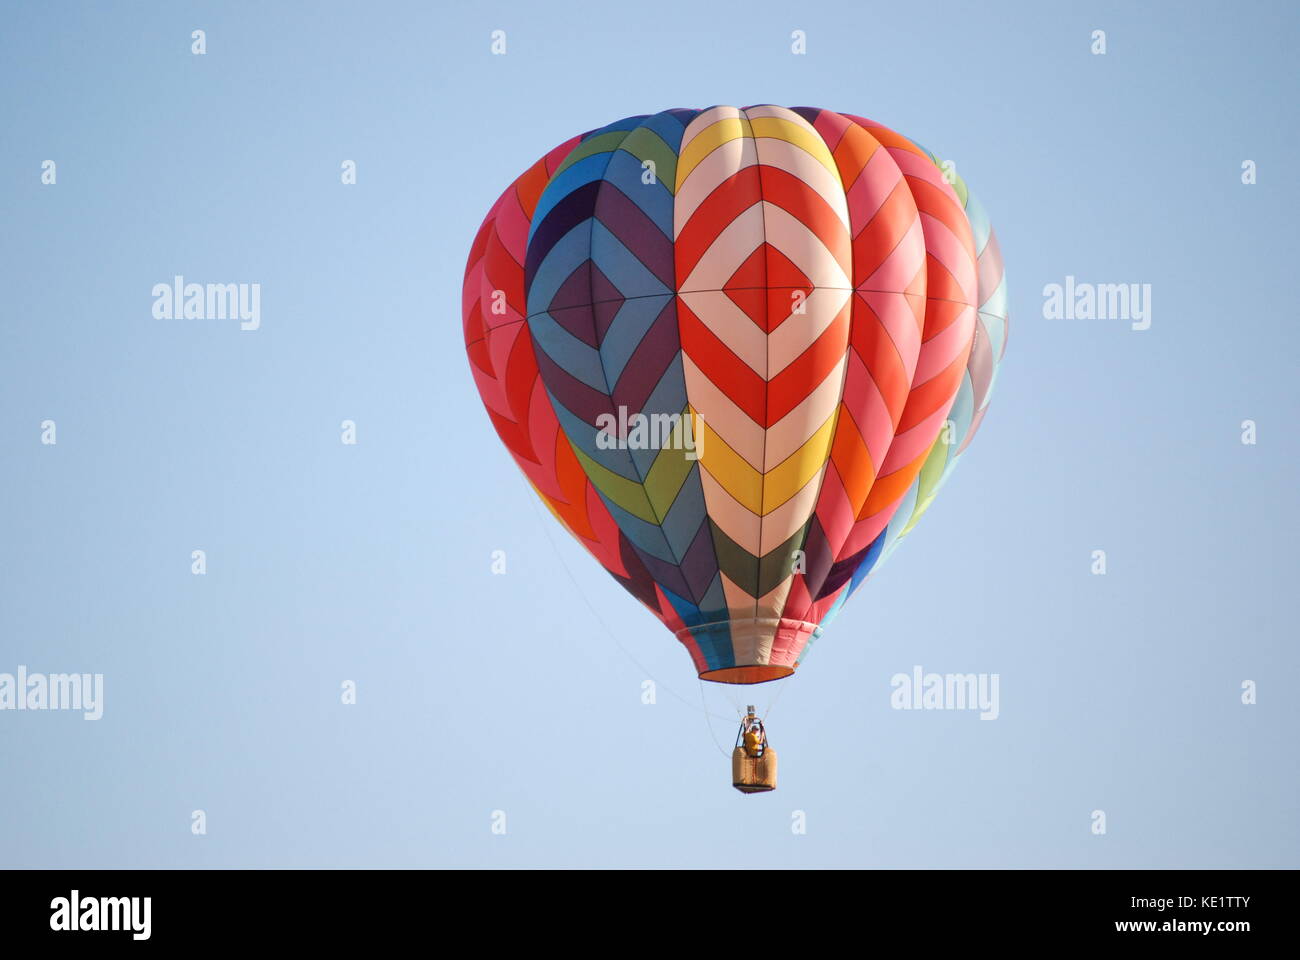 Rouge, blanc, bleu et vols en montgolfière dans les montagnes Banque D'Images